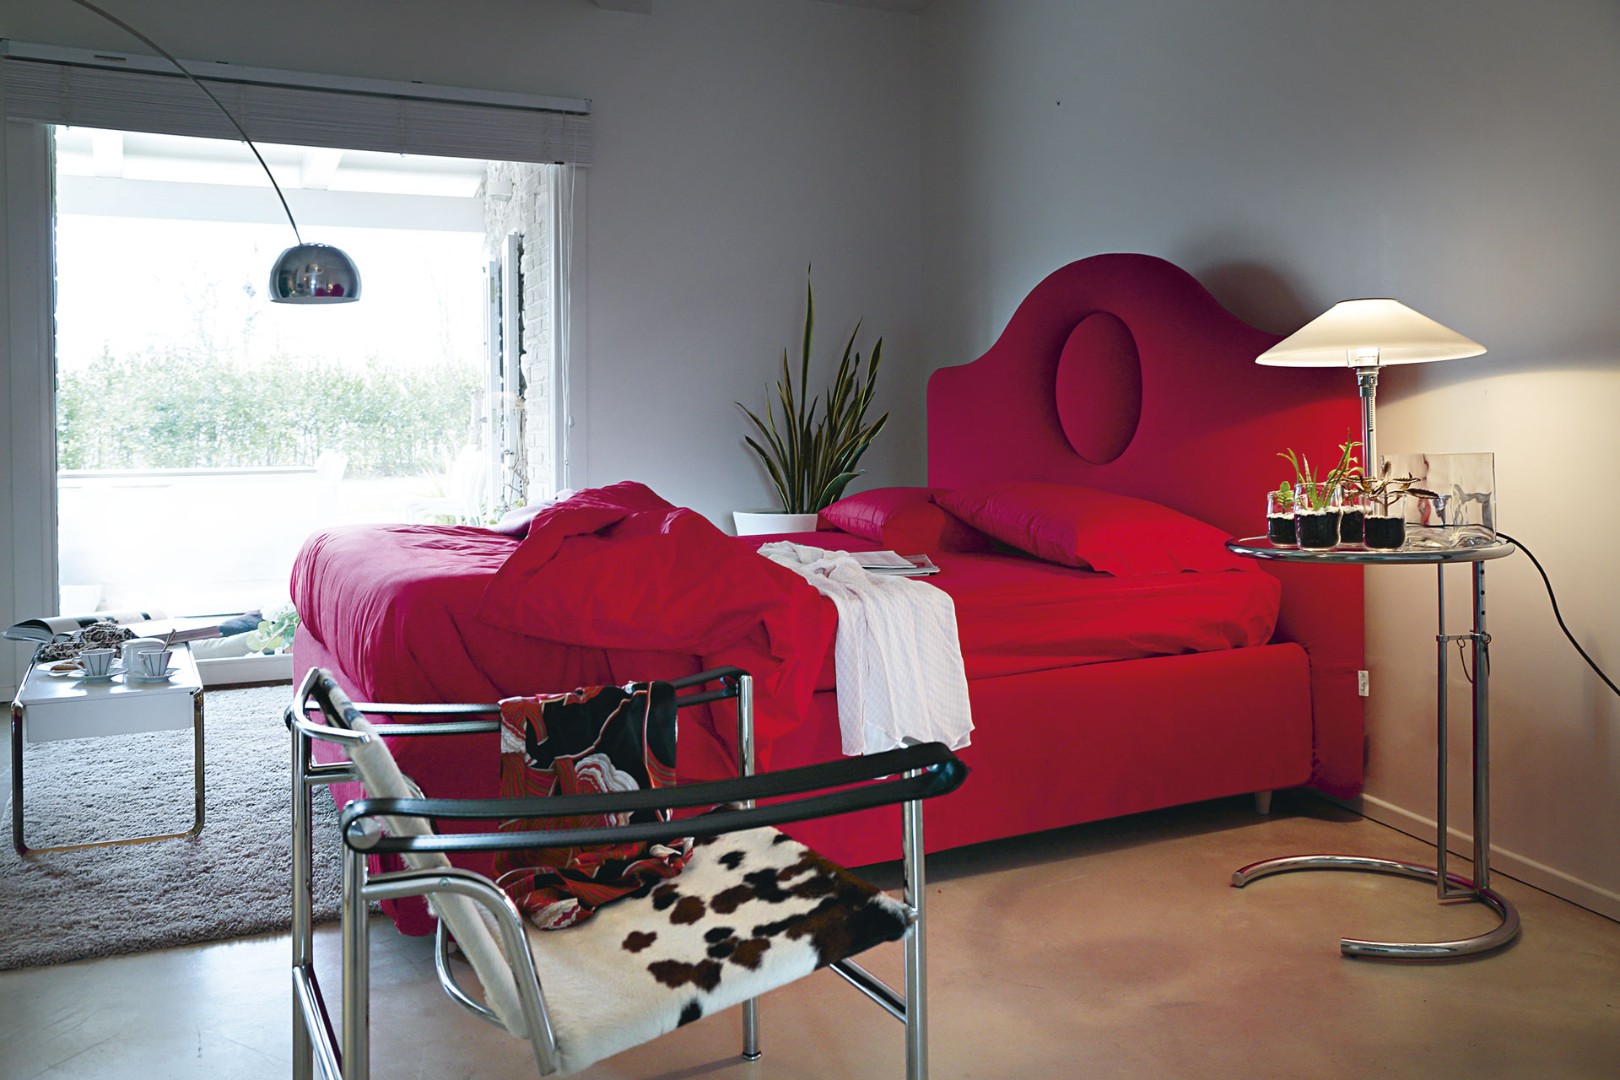 Кровать Sophie Modern — ₽, купить у официального дилера Nicolettihome